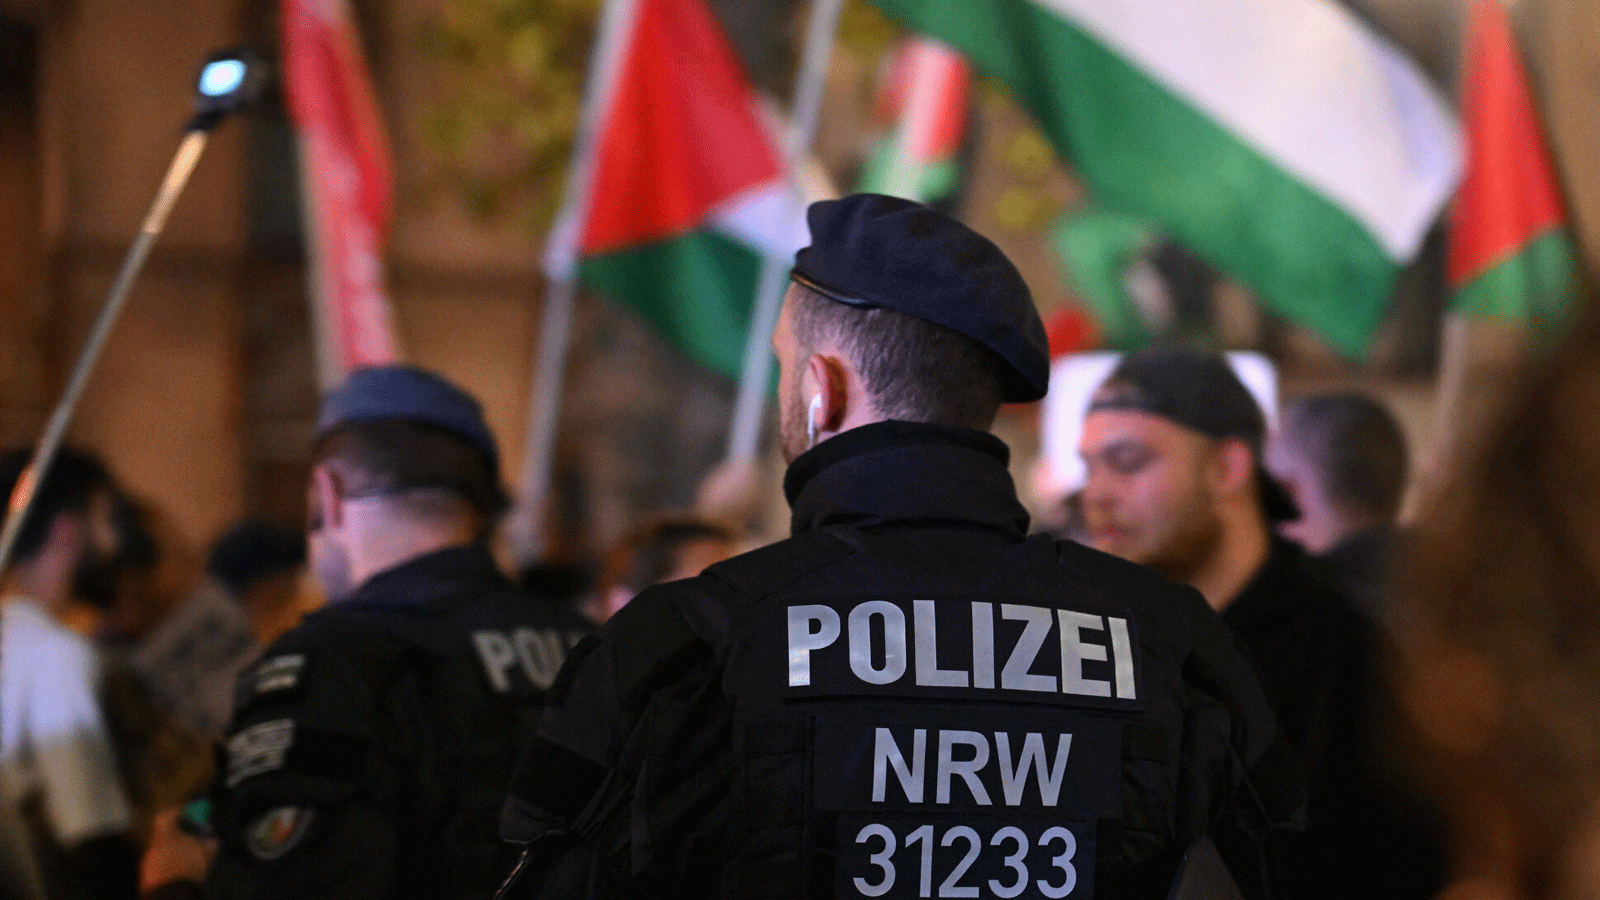 شرطة مكافحة الشغب تراقب متظاهرين مؤيدين للفلسطينيين ’تضامنا مع غزة’ يعقدون مسيرة في دويسبورغ، غرب ألمانيا.